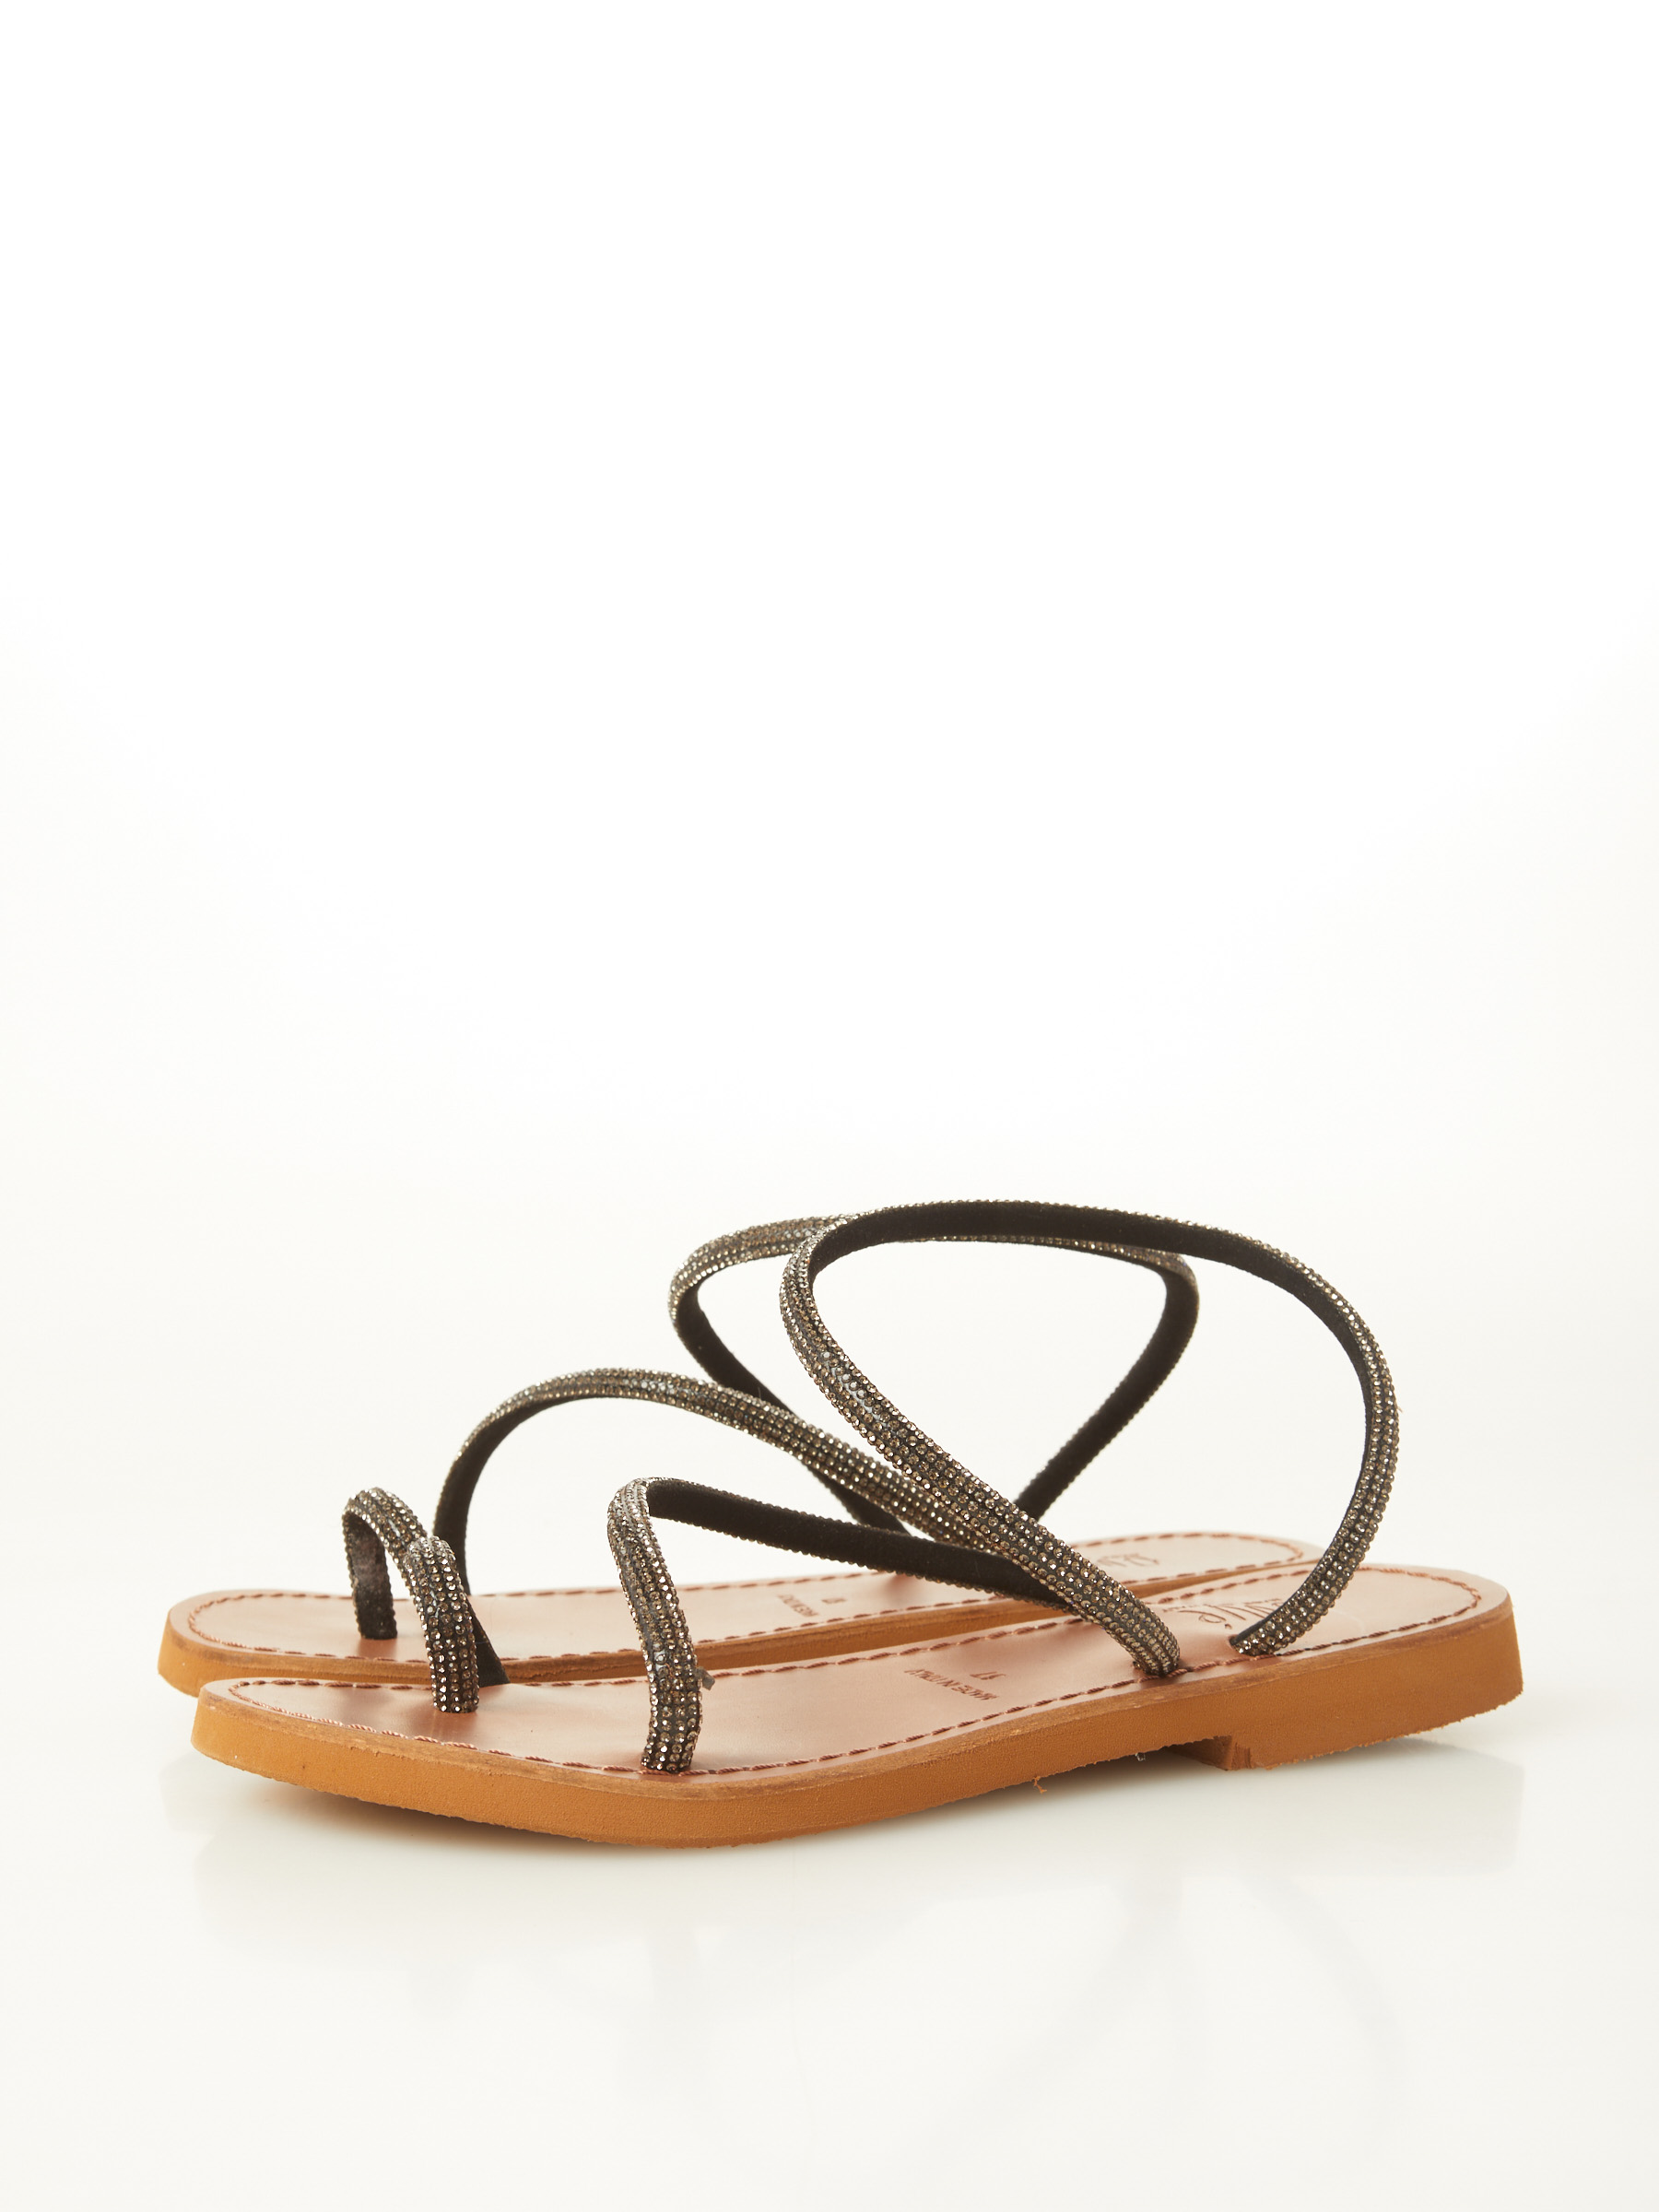 A Prezzi Outlet Sandal With Rhinestones F0545554-0695 Migliori